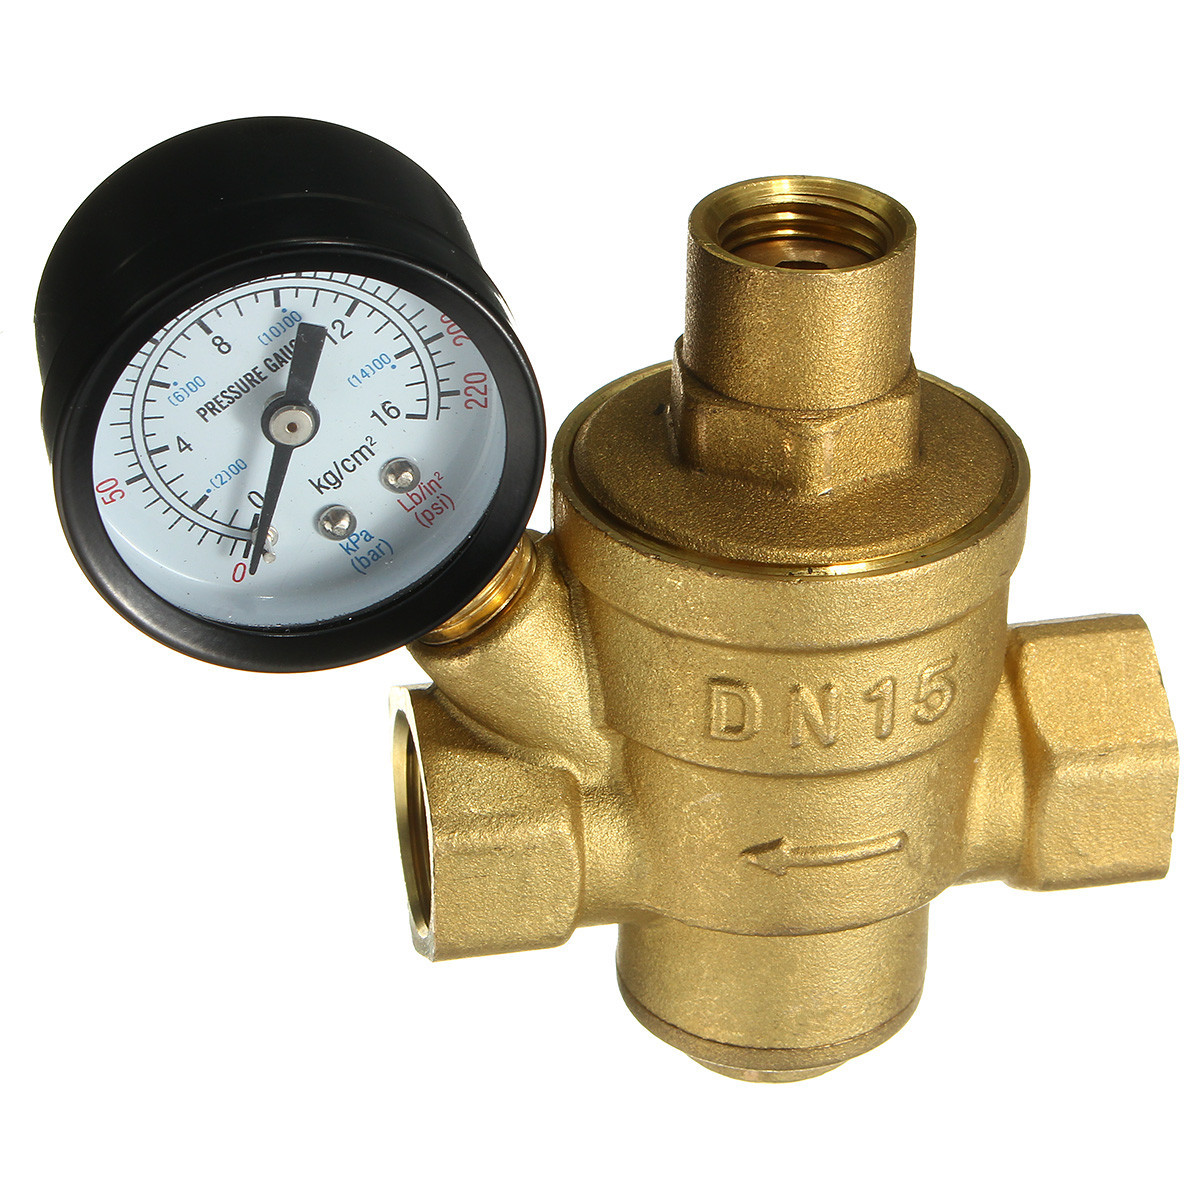 Adjustable-DN15-Bspp-Brass-Water-Pressure-Reducing-Valve-with-Gauge-Flow-1104771-4